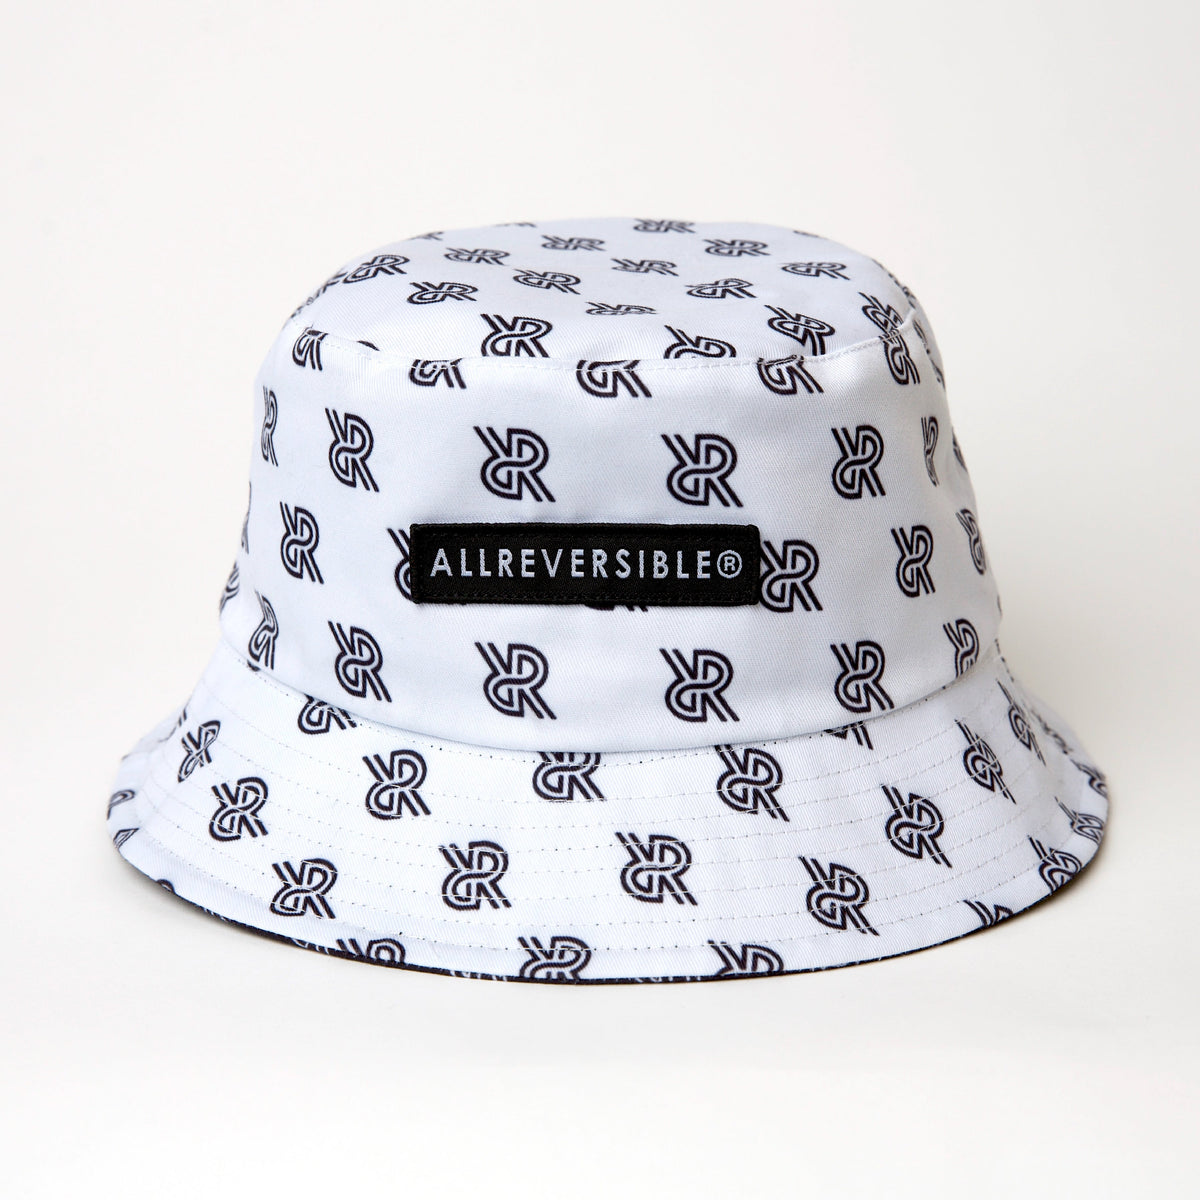 Reversible - White ALLREVERSIBLE® Hat - Bucket Black and